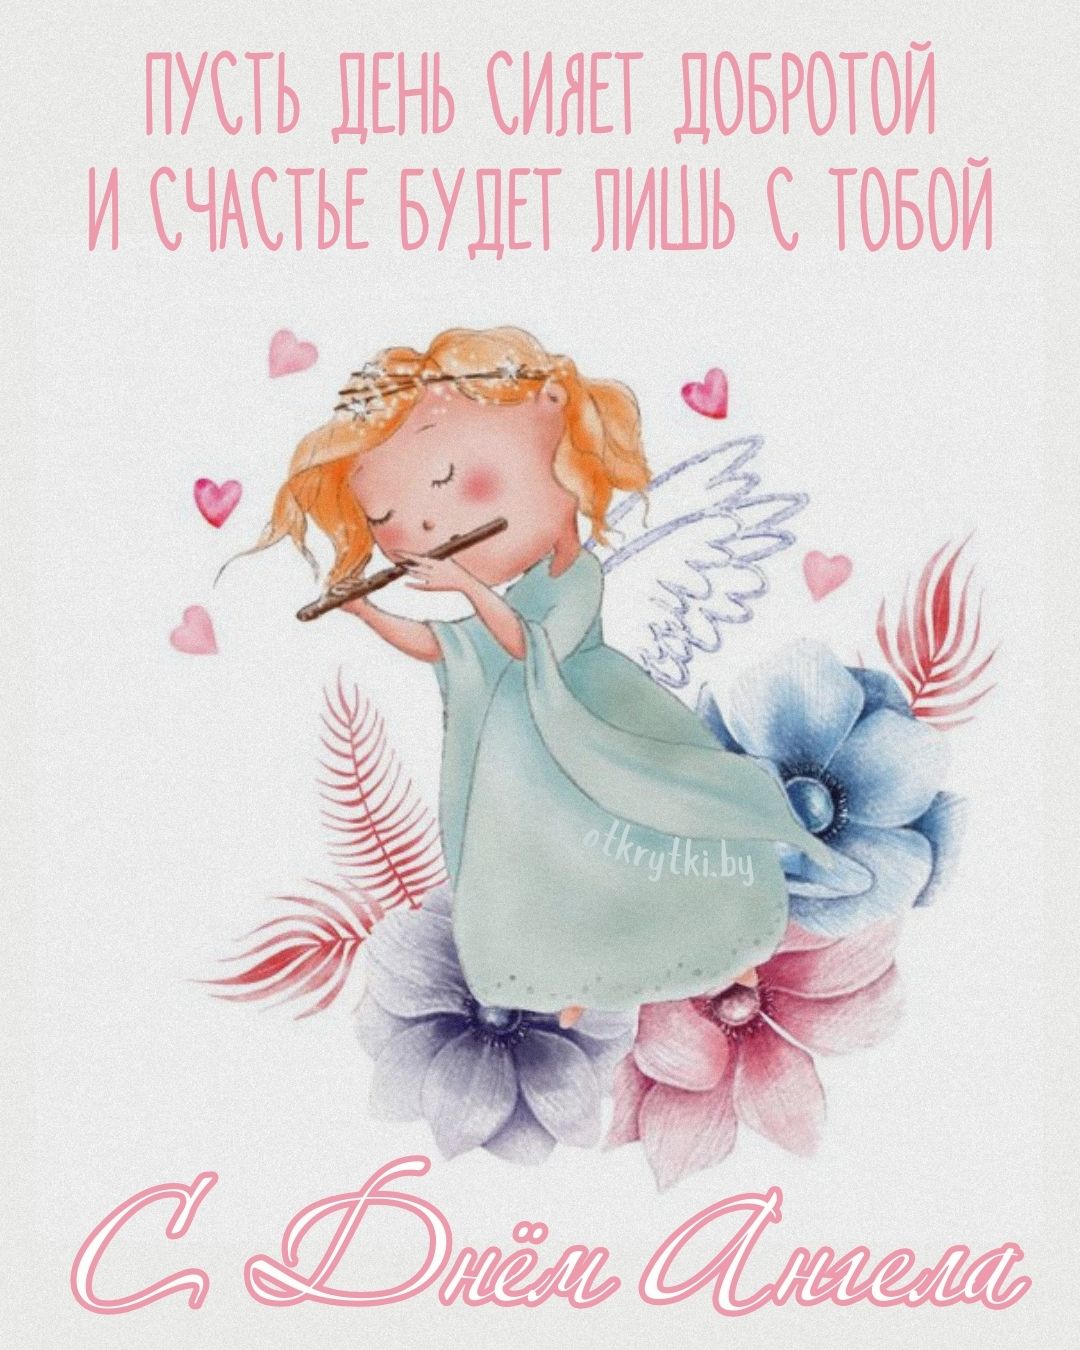 Милая открытка с Днем ангела